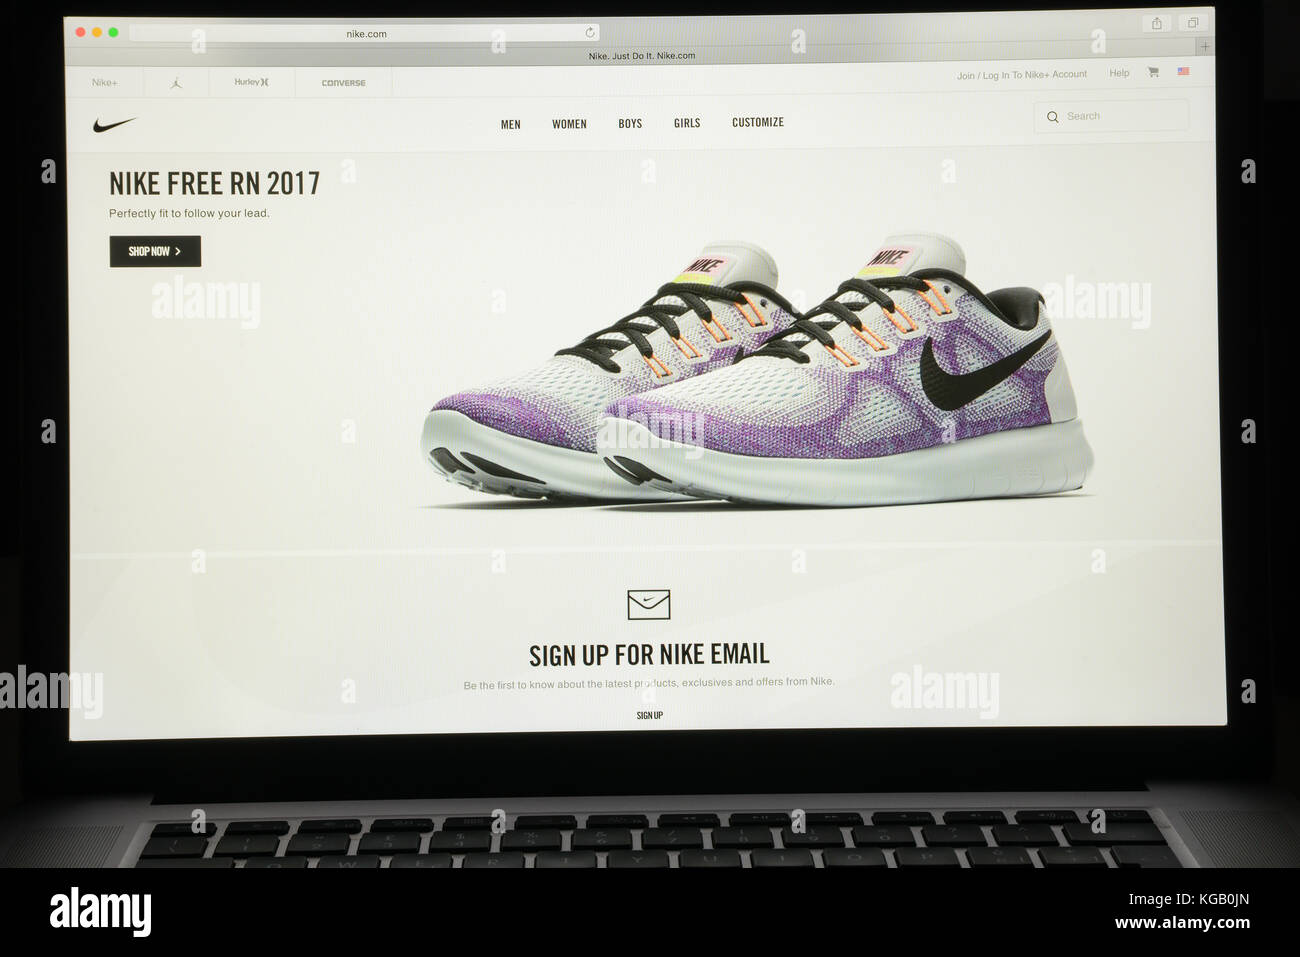 mammalian Are familiar Arashigaoka Milán, Italia - 7 de mayo, 2017: Nike página web. Se trata de una tienda de  comercio electrónico de moda Fotografía de stock - Alamy